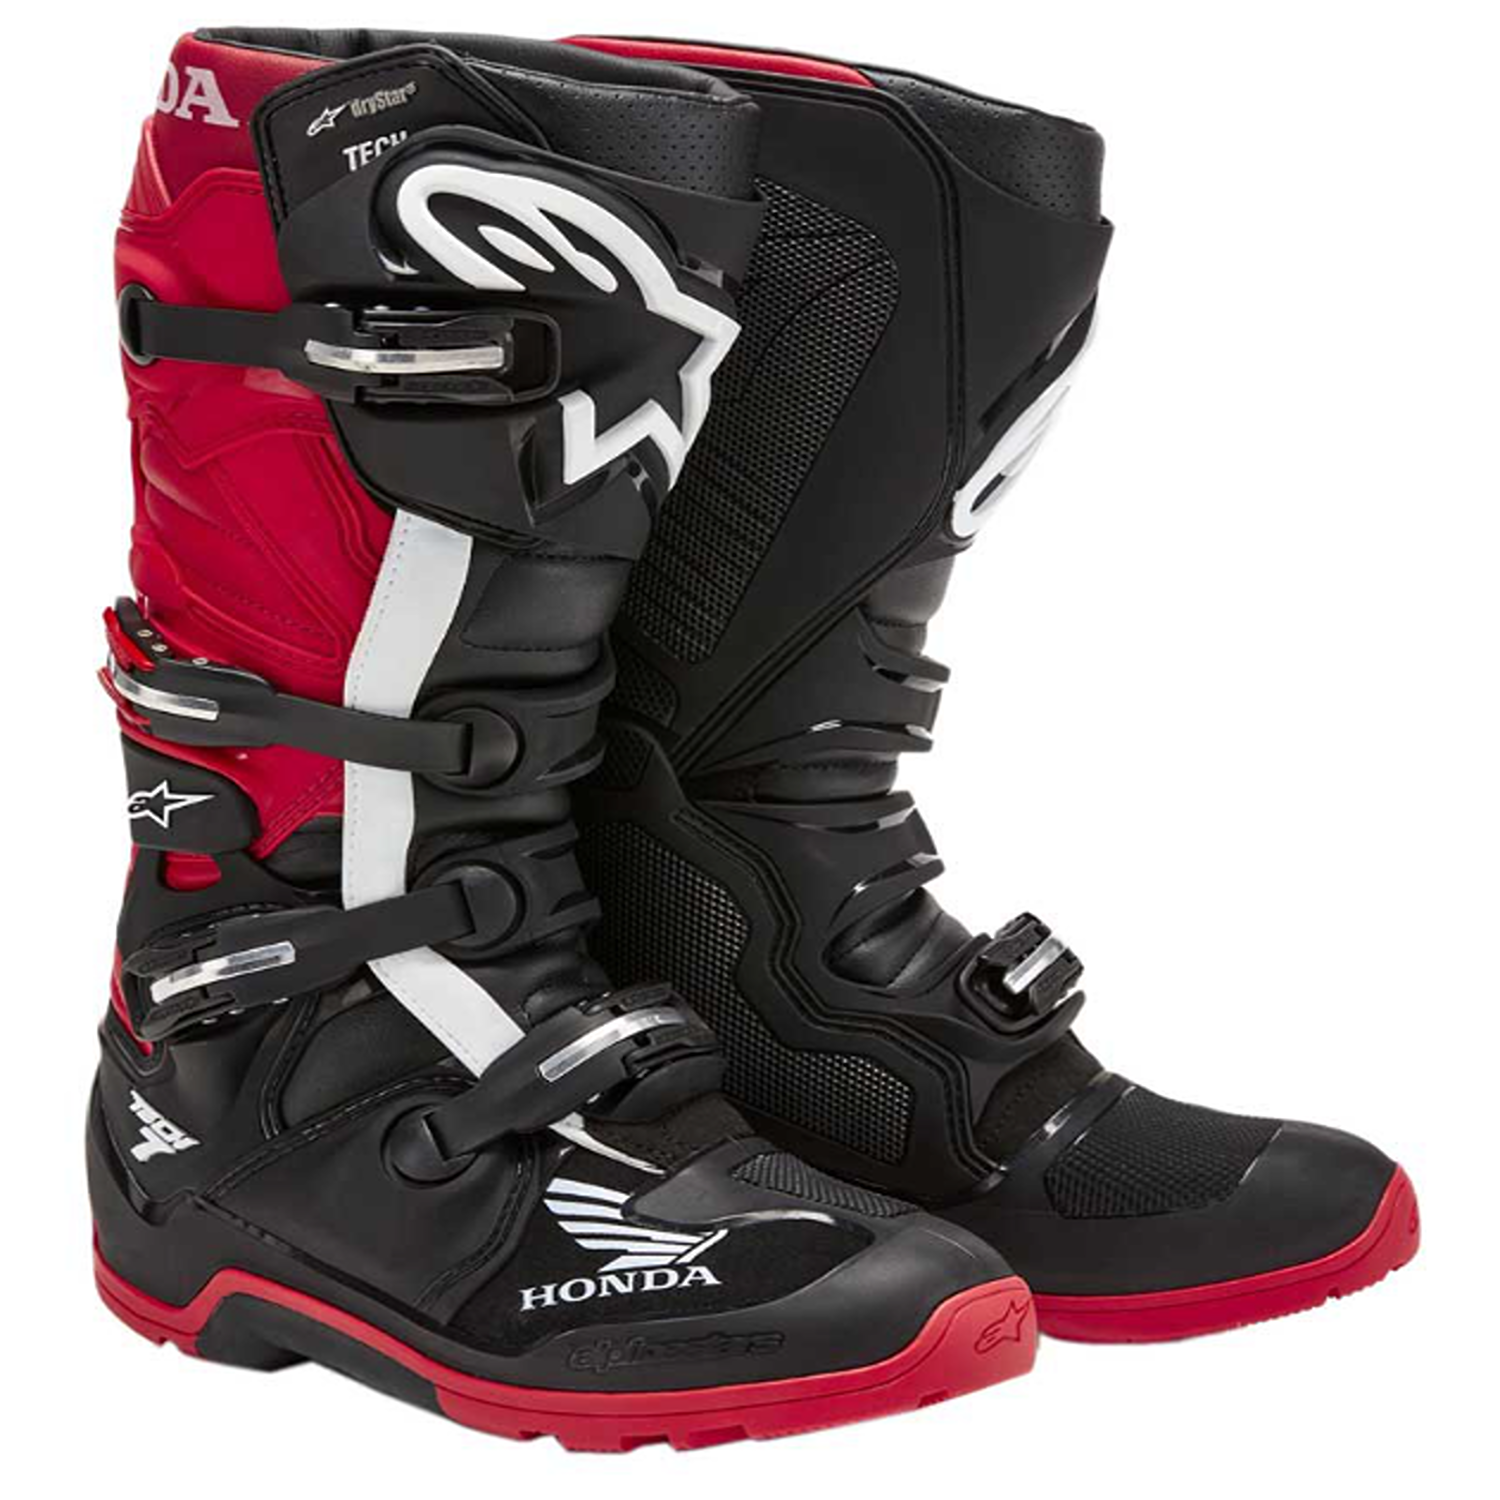 Image of Alpinestars Honda Tech 7 Enduro Drystar Boots Black Bright Red Talla US 16